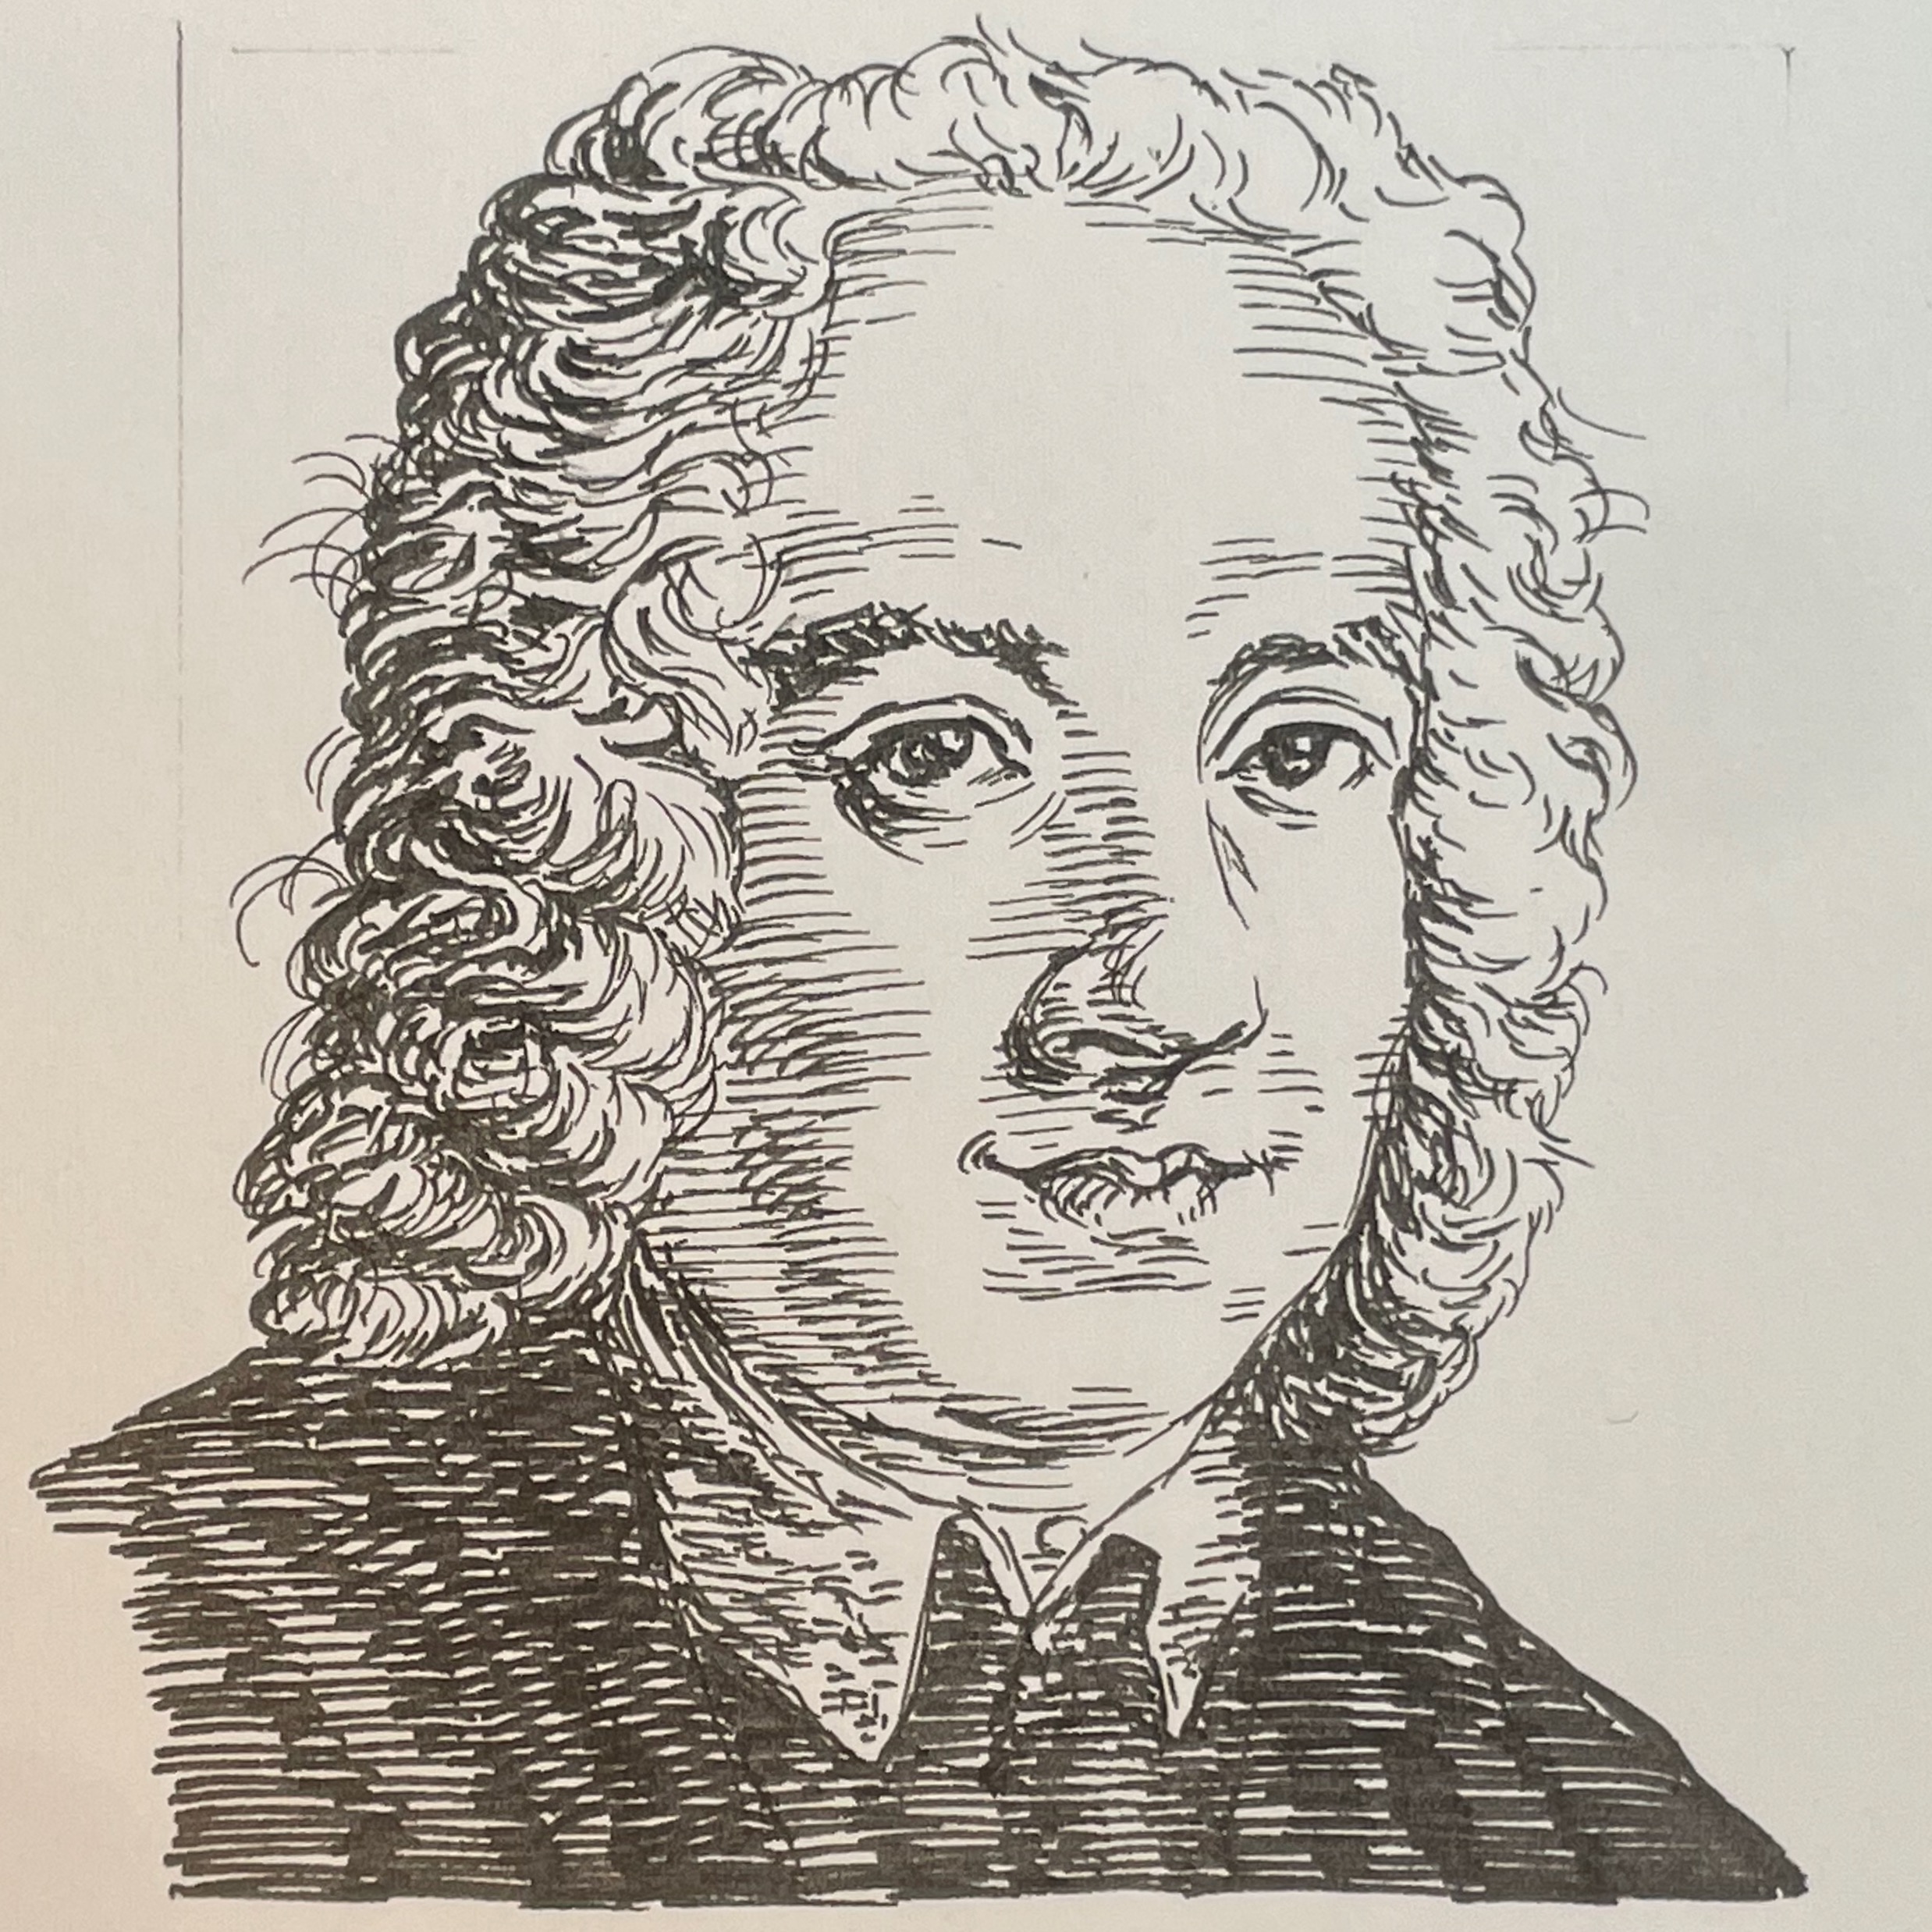 1660-1725を生きた作曲家。オペラとカンタータにDa capo aria形式を確立させた第一人者である。その作曲活動はソナタ、モテット、ミサなどあらゆる音楽を手がけていた。スペイン大使に帯同したナポリで音楽教育を行ったことからナポリ楽派の祖と称されている。